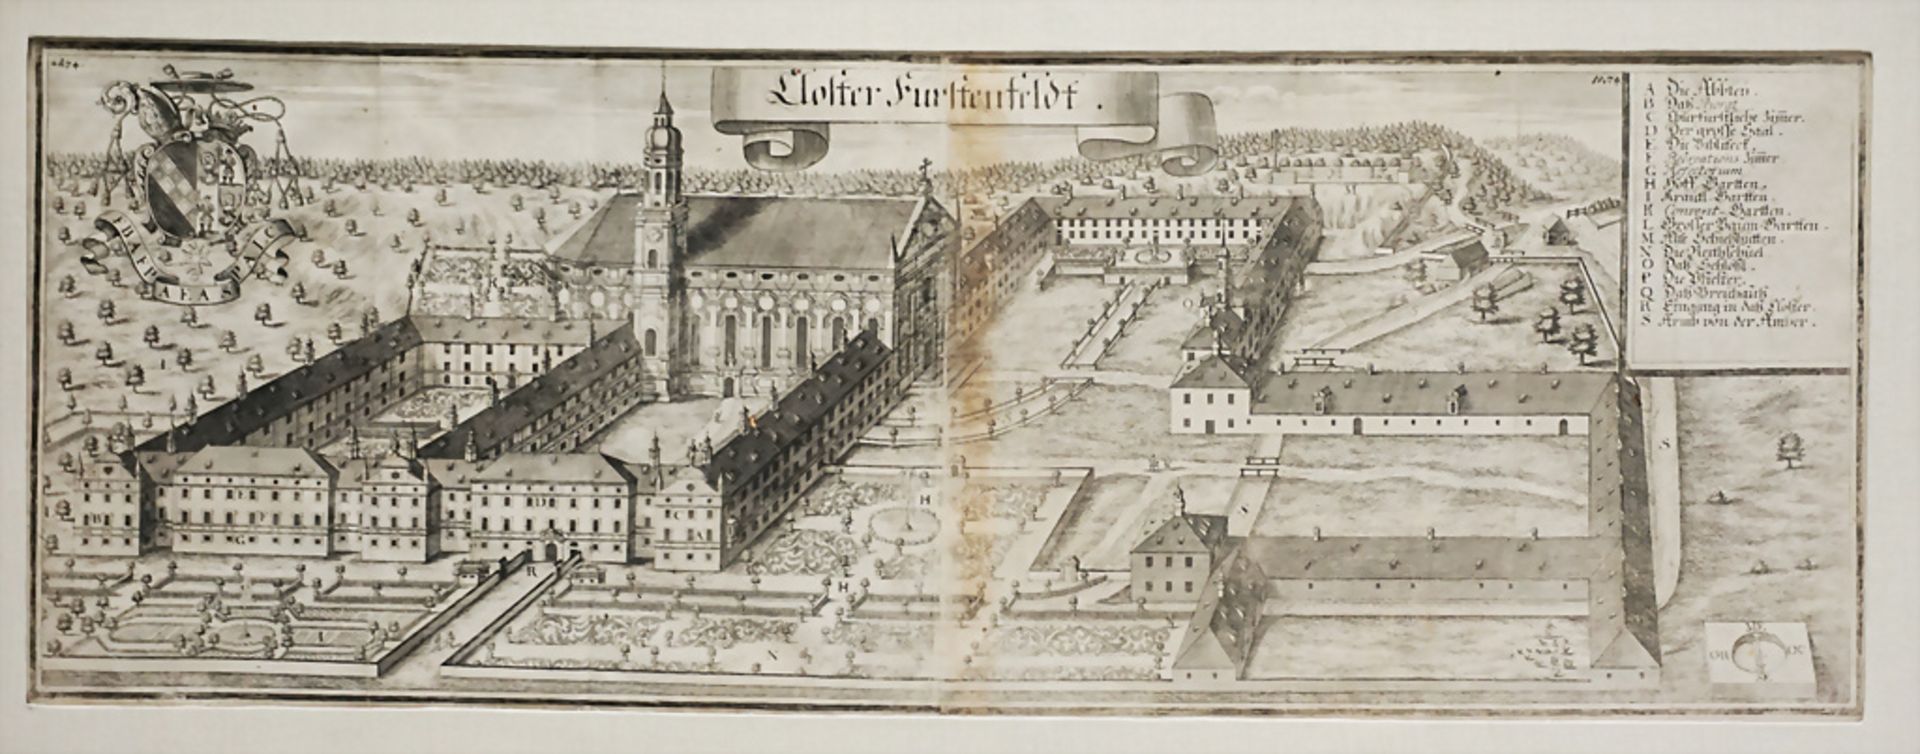 Kupferstich 'Kloster Fürstenfeldt' in Fürstenfeldbruck bei München / A copper engraving, um 1700